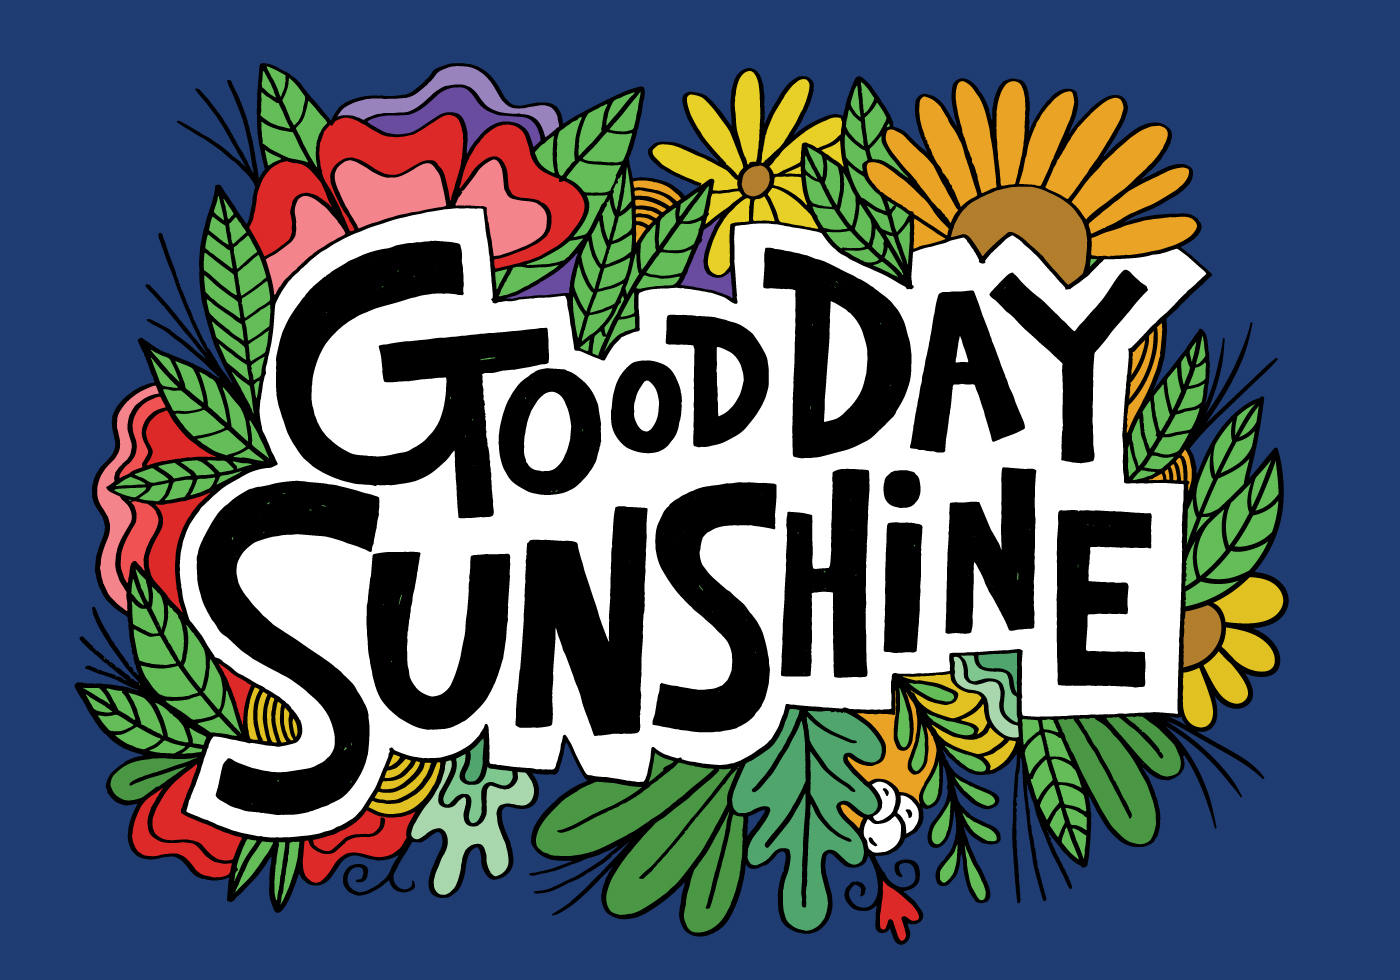 Good Day Sunshine with lyrics 